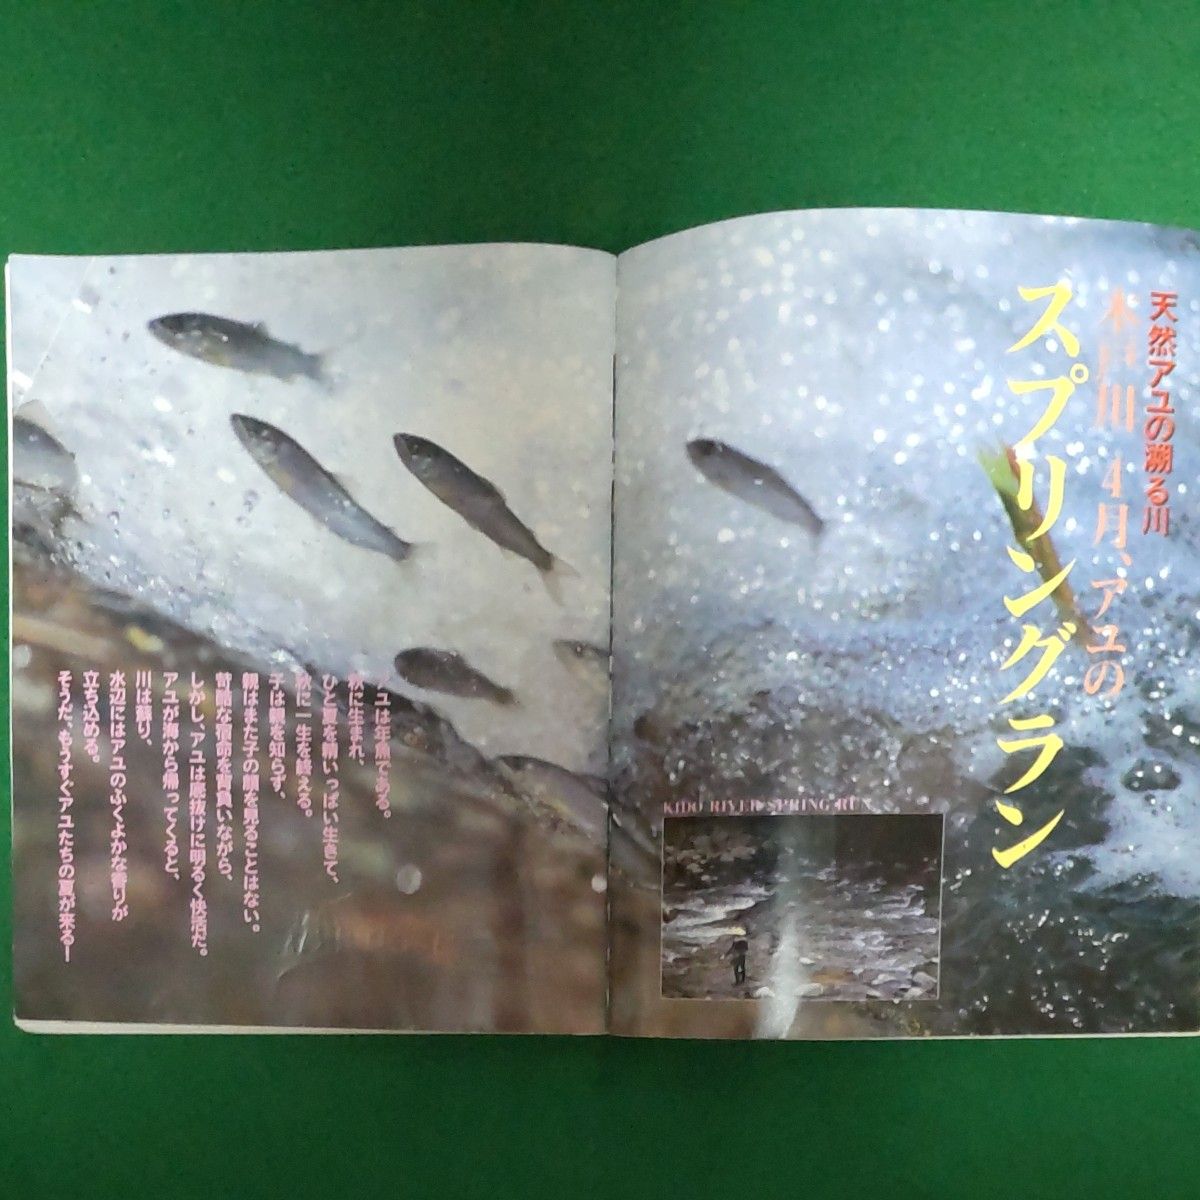  ★最先端のアユの友釣り  vol.3   横塚鴻一  BIG1シリーズ  25